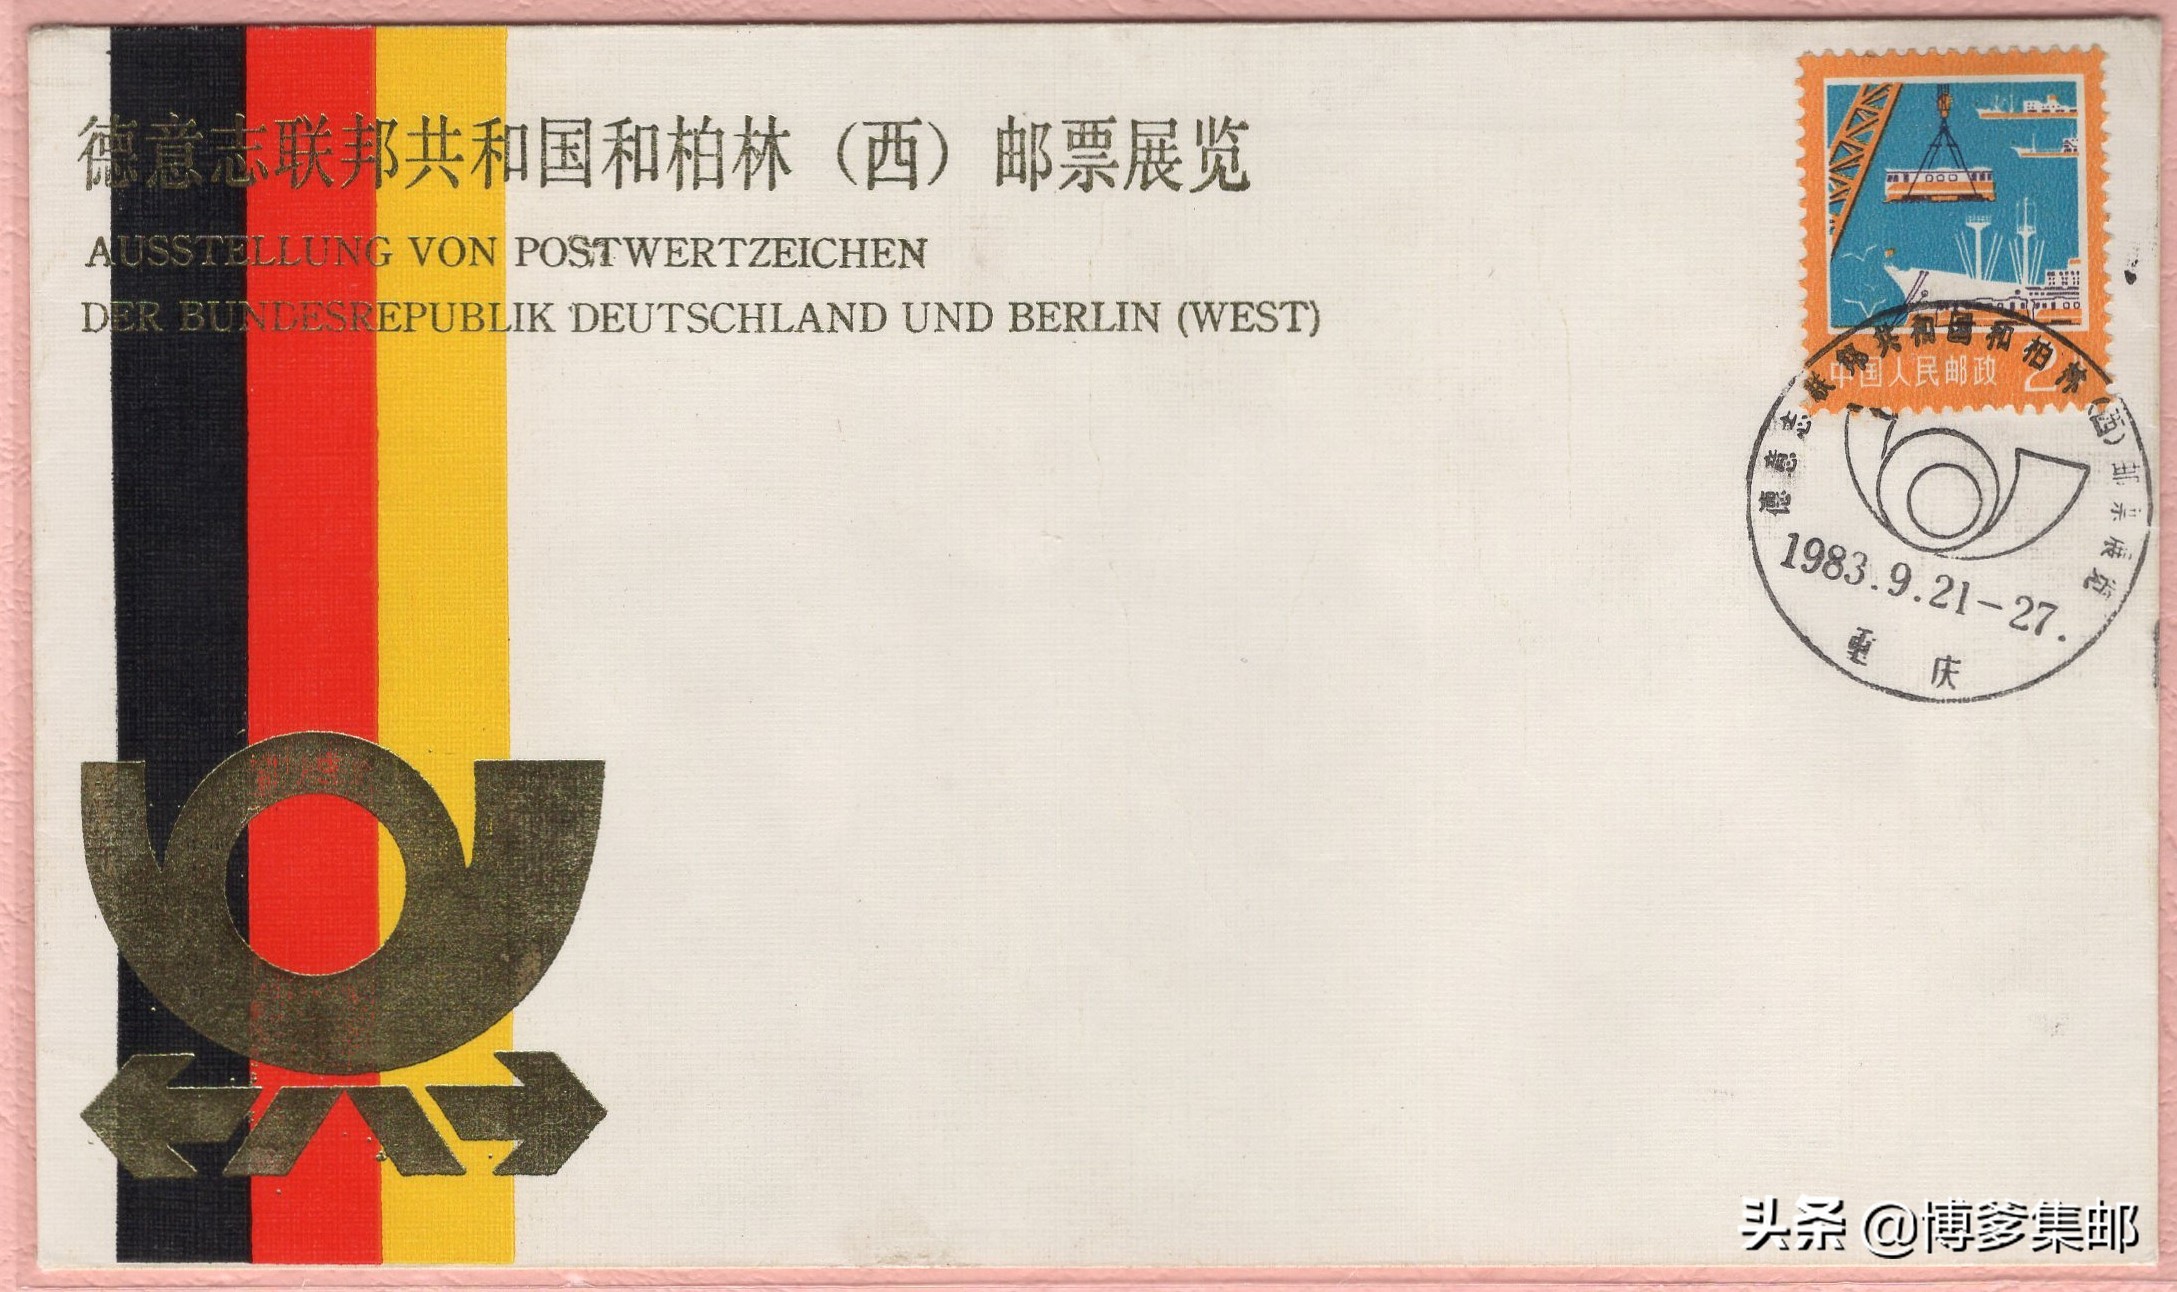 1983年德国联邦共和国和柏林（西）邮票展览会